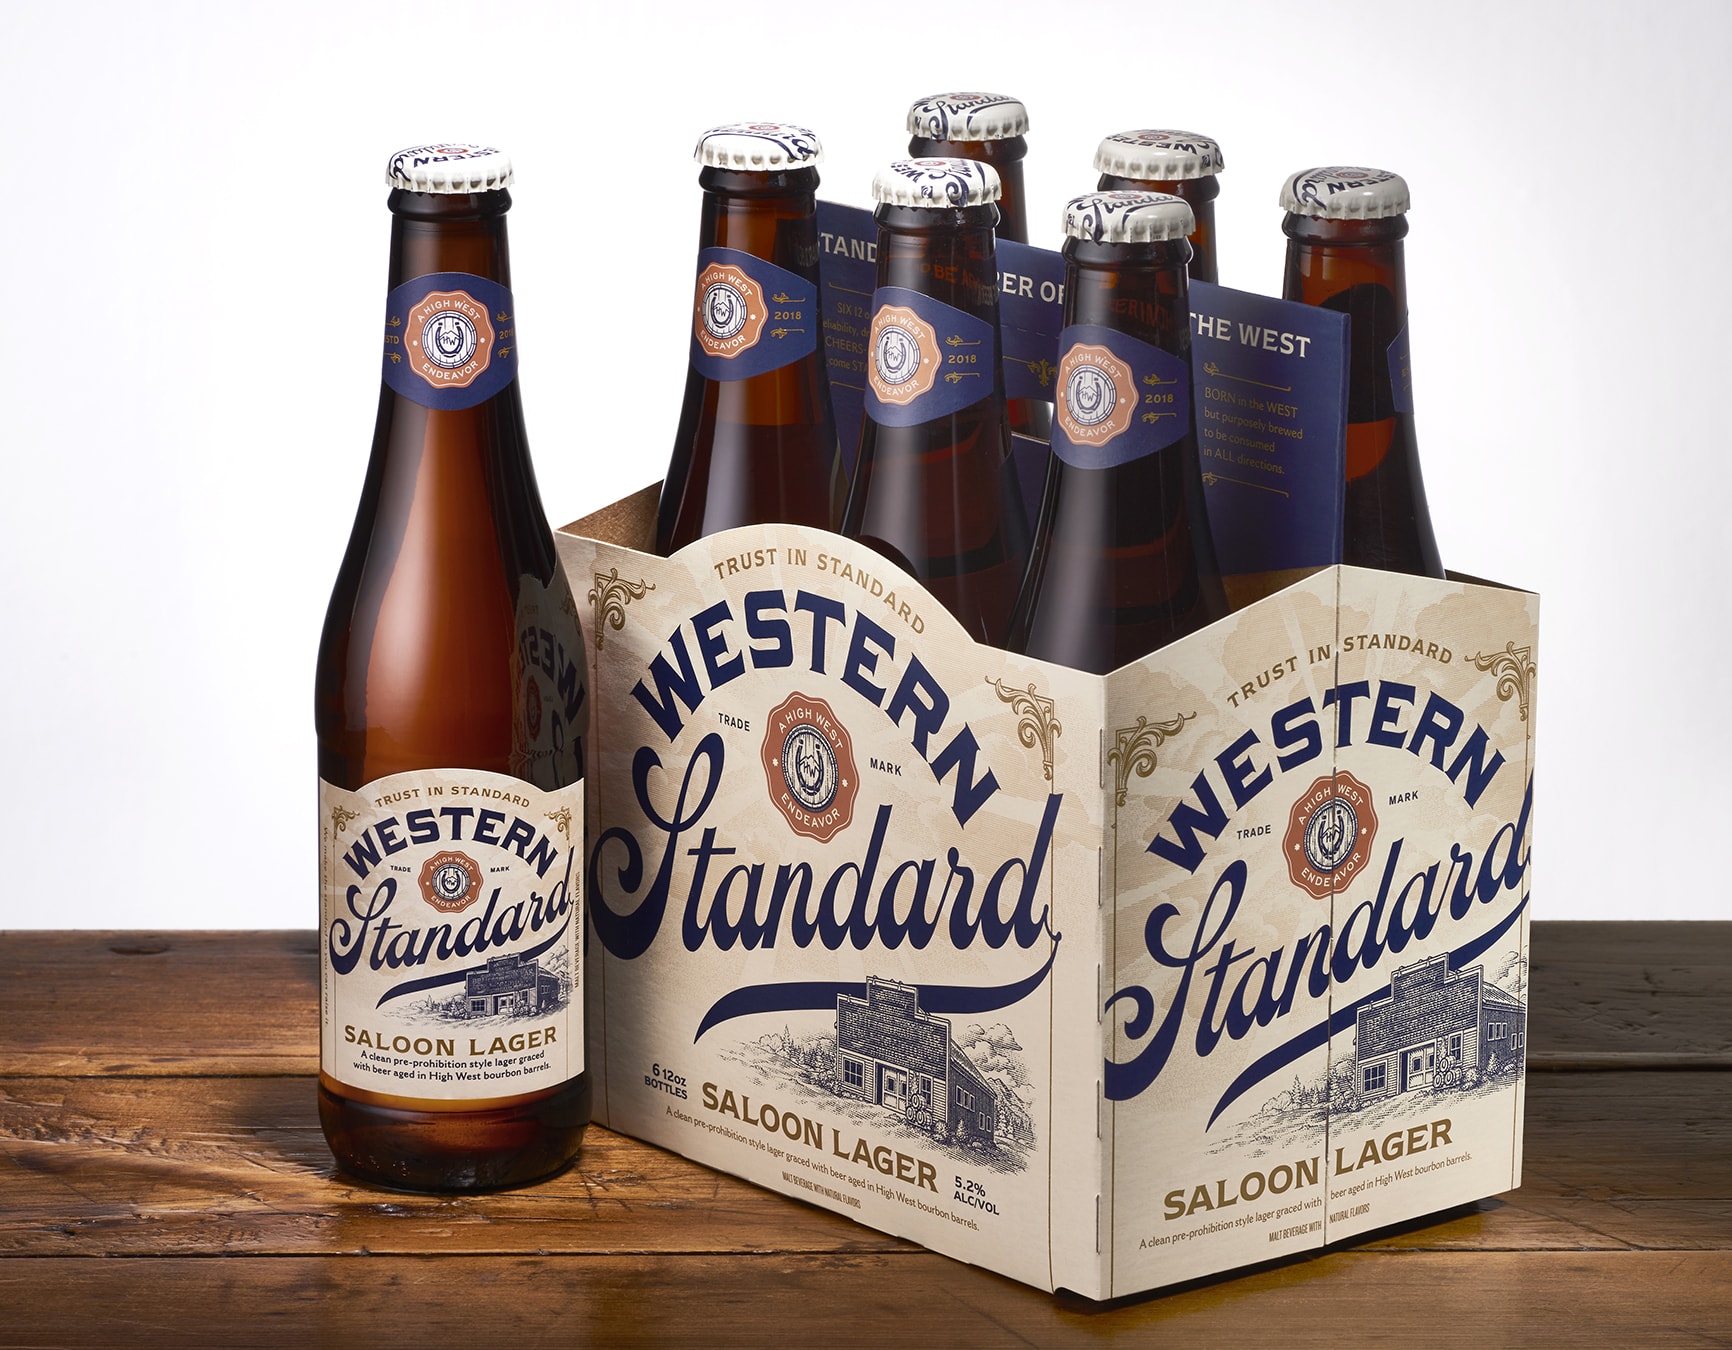 Western Standard beer 6-pack design